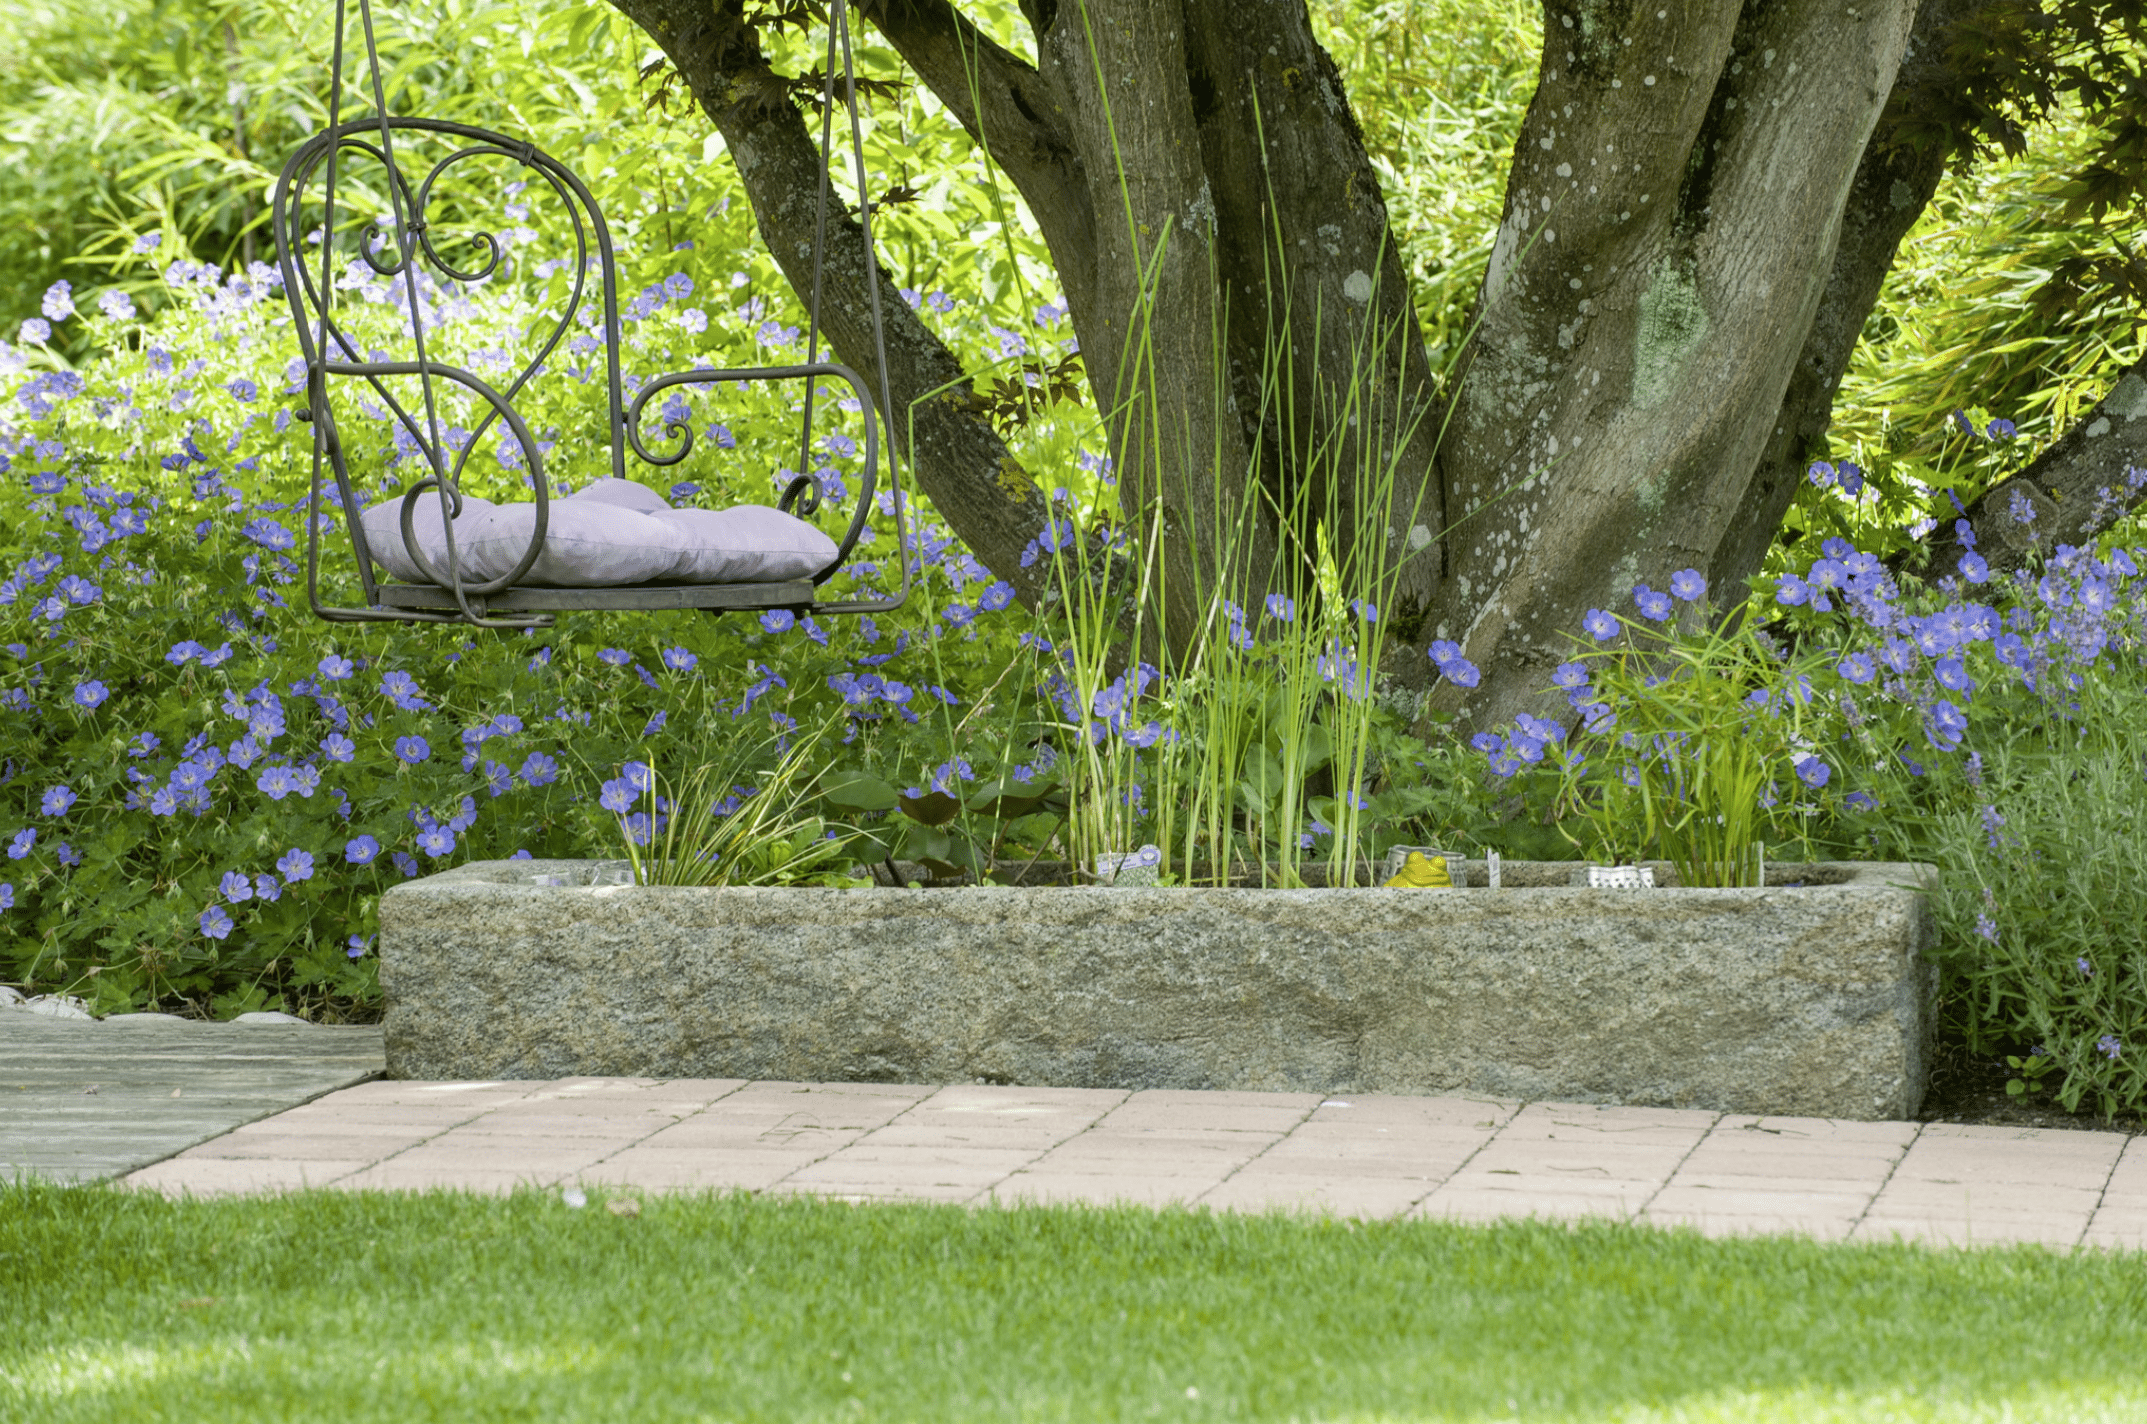 Gartenbau Schmid zeigt ein Blumenbeet aus Pflastersteinen mit weißen Blumen und Lavendel bepflanzt, Brunnen.